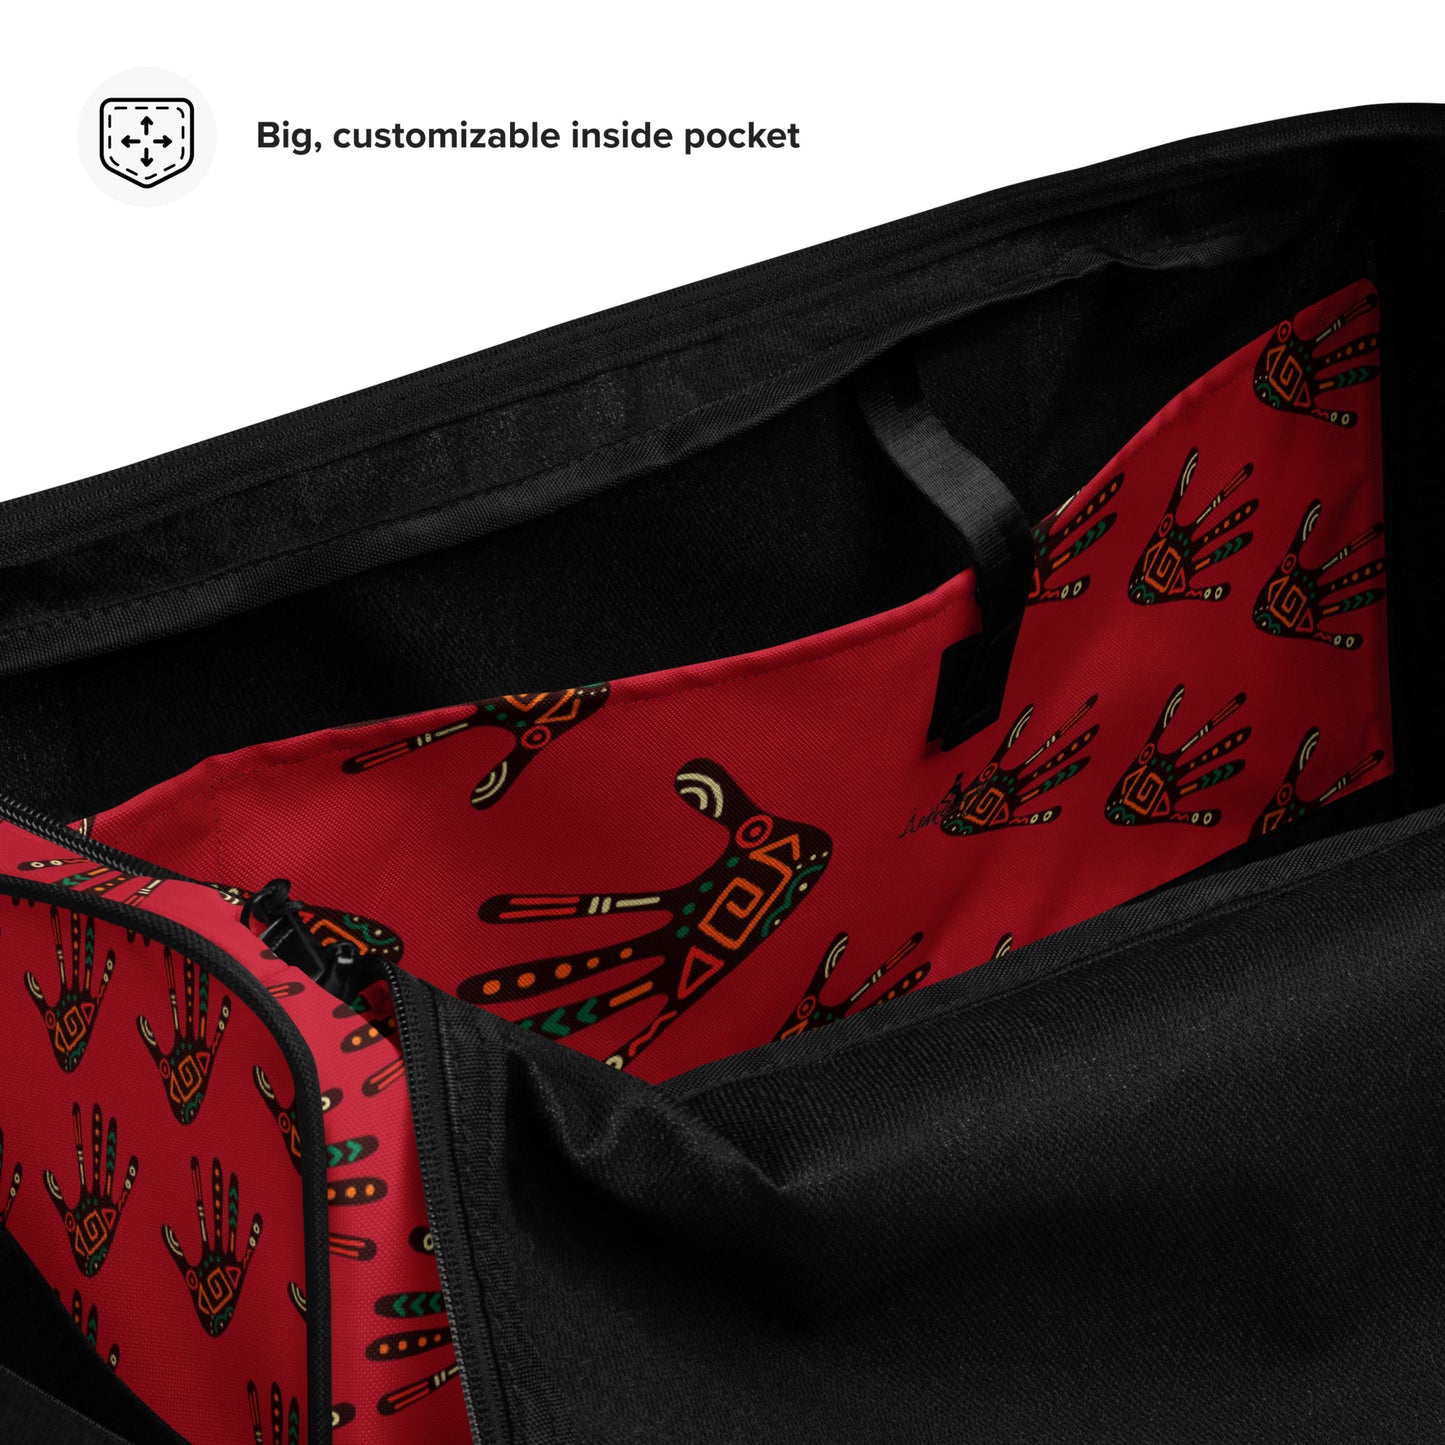 Duro Crimson Palm Print Duffle Bag